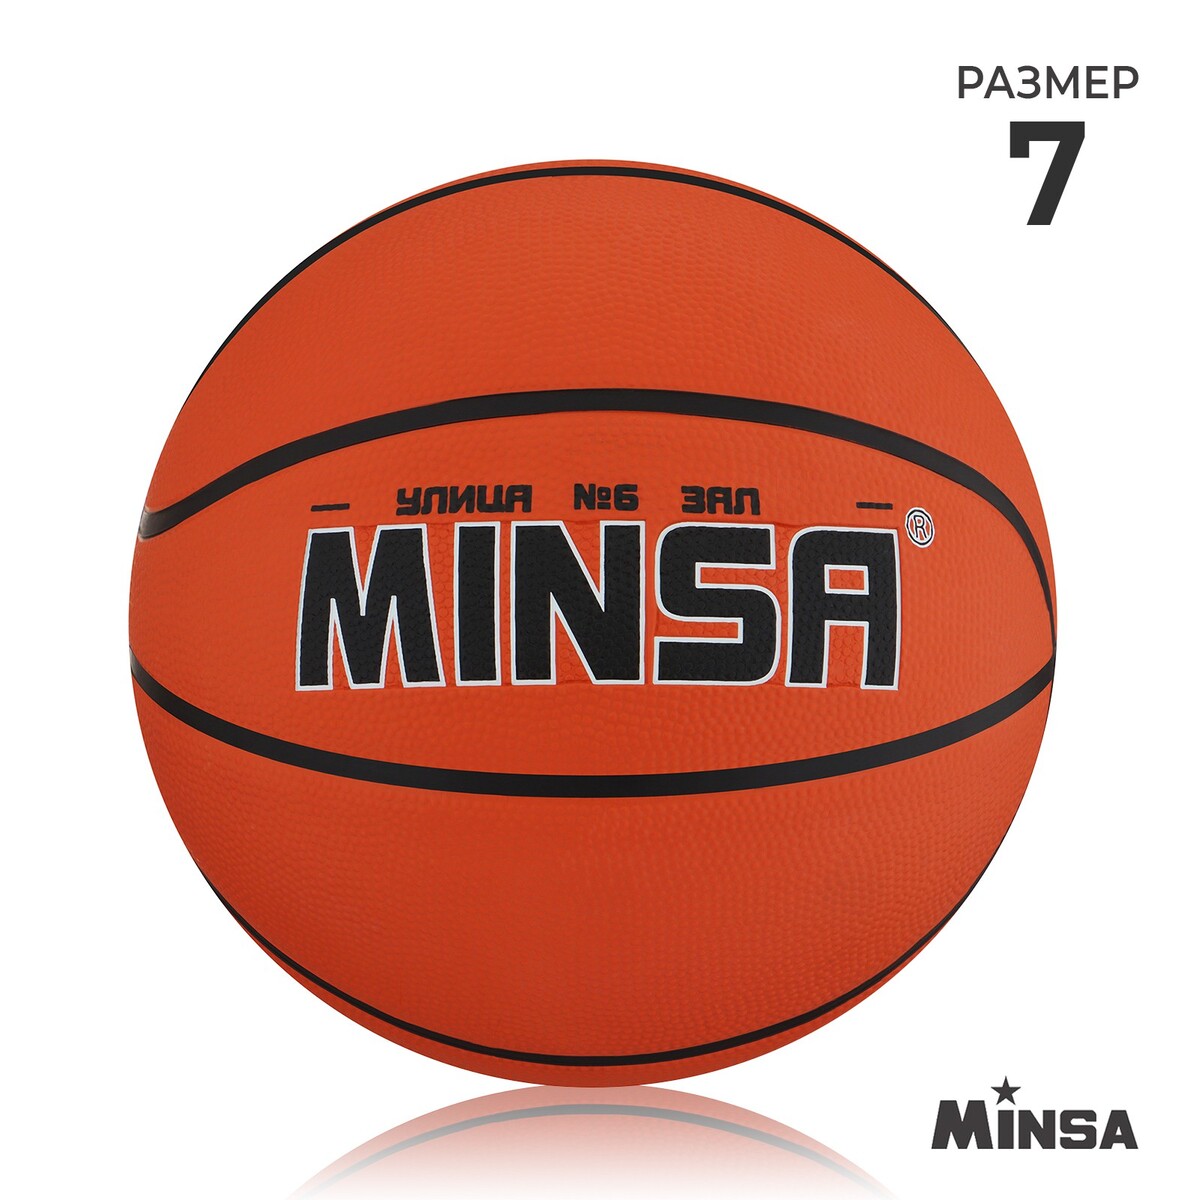 Мяч баскетбольный minsa, пвх, клееный, 8 панелей, р. 7 мяч баскетбольный onlytop тигр пвх клееный 8 панелей р 7